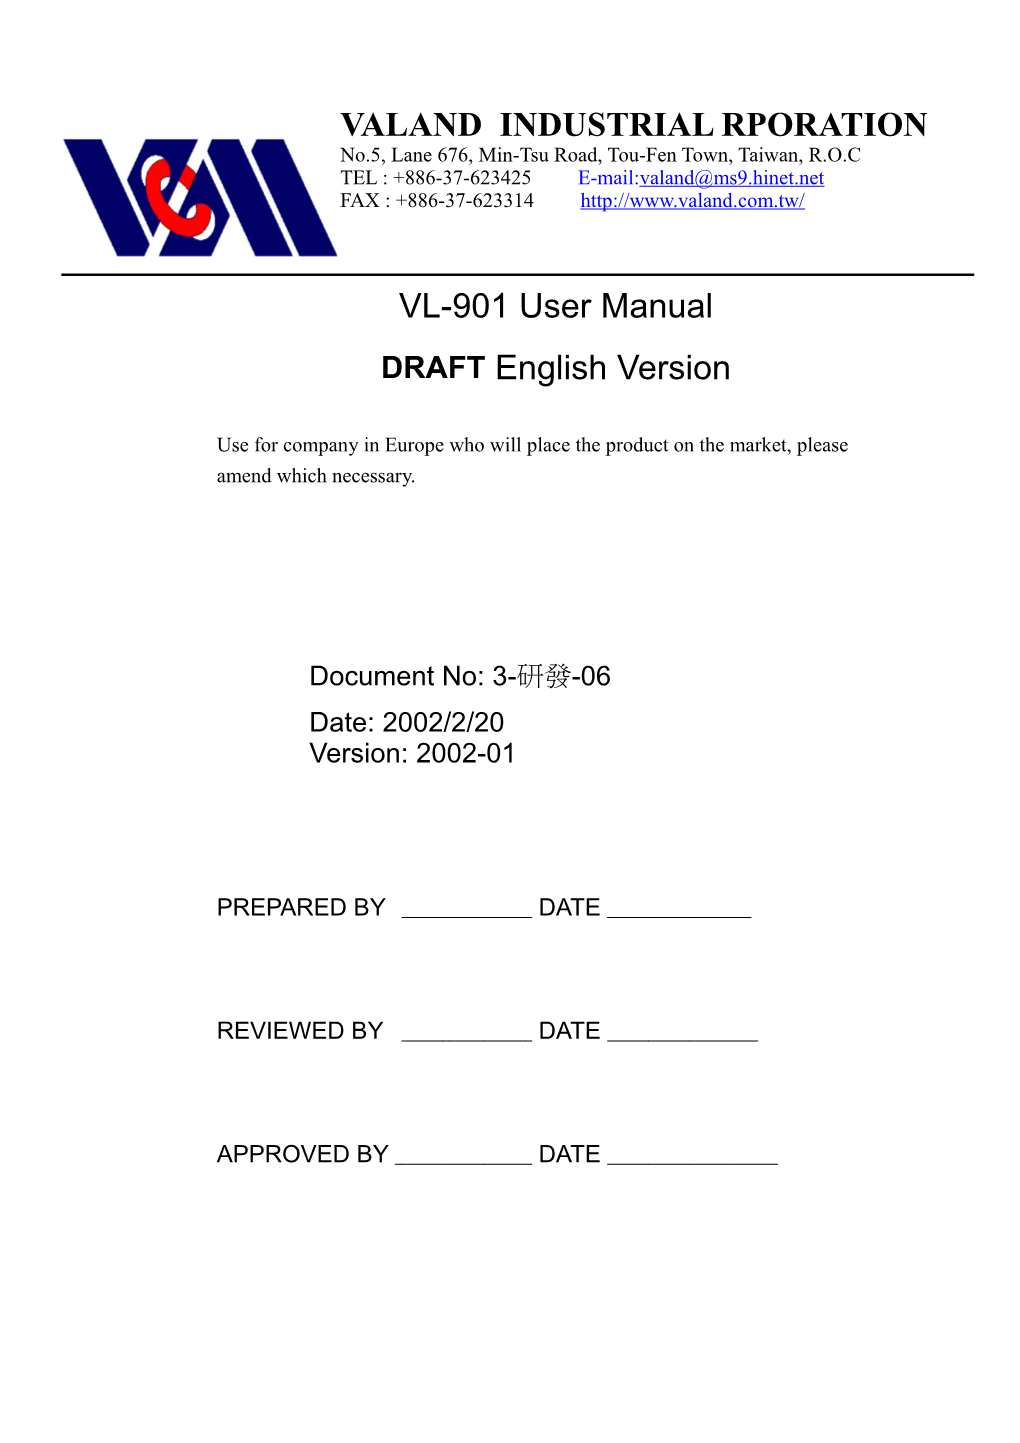 VL-901 User Manual